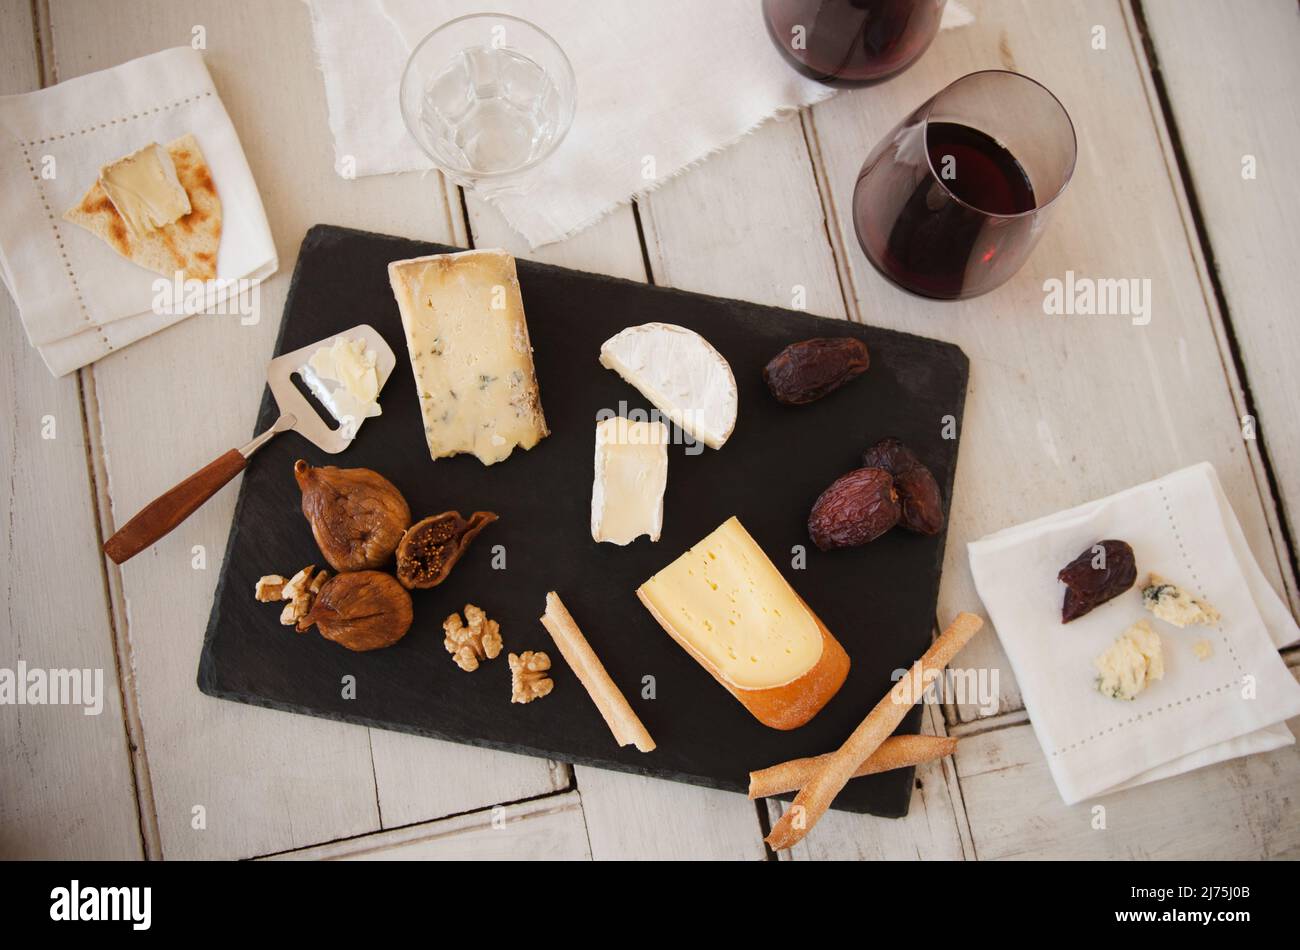 Assortiment de fromages gastronomiques avec figues, noix, dattes et vin Banque D'Images